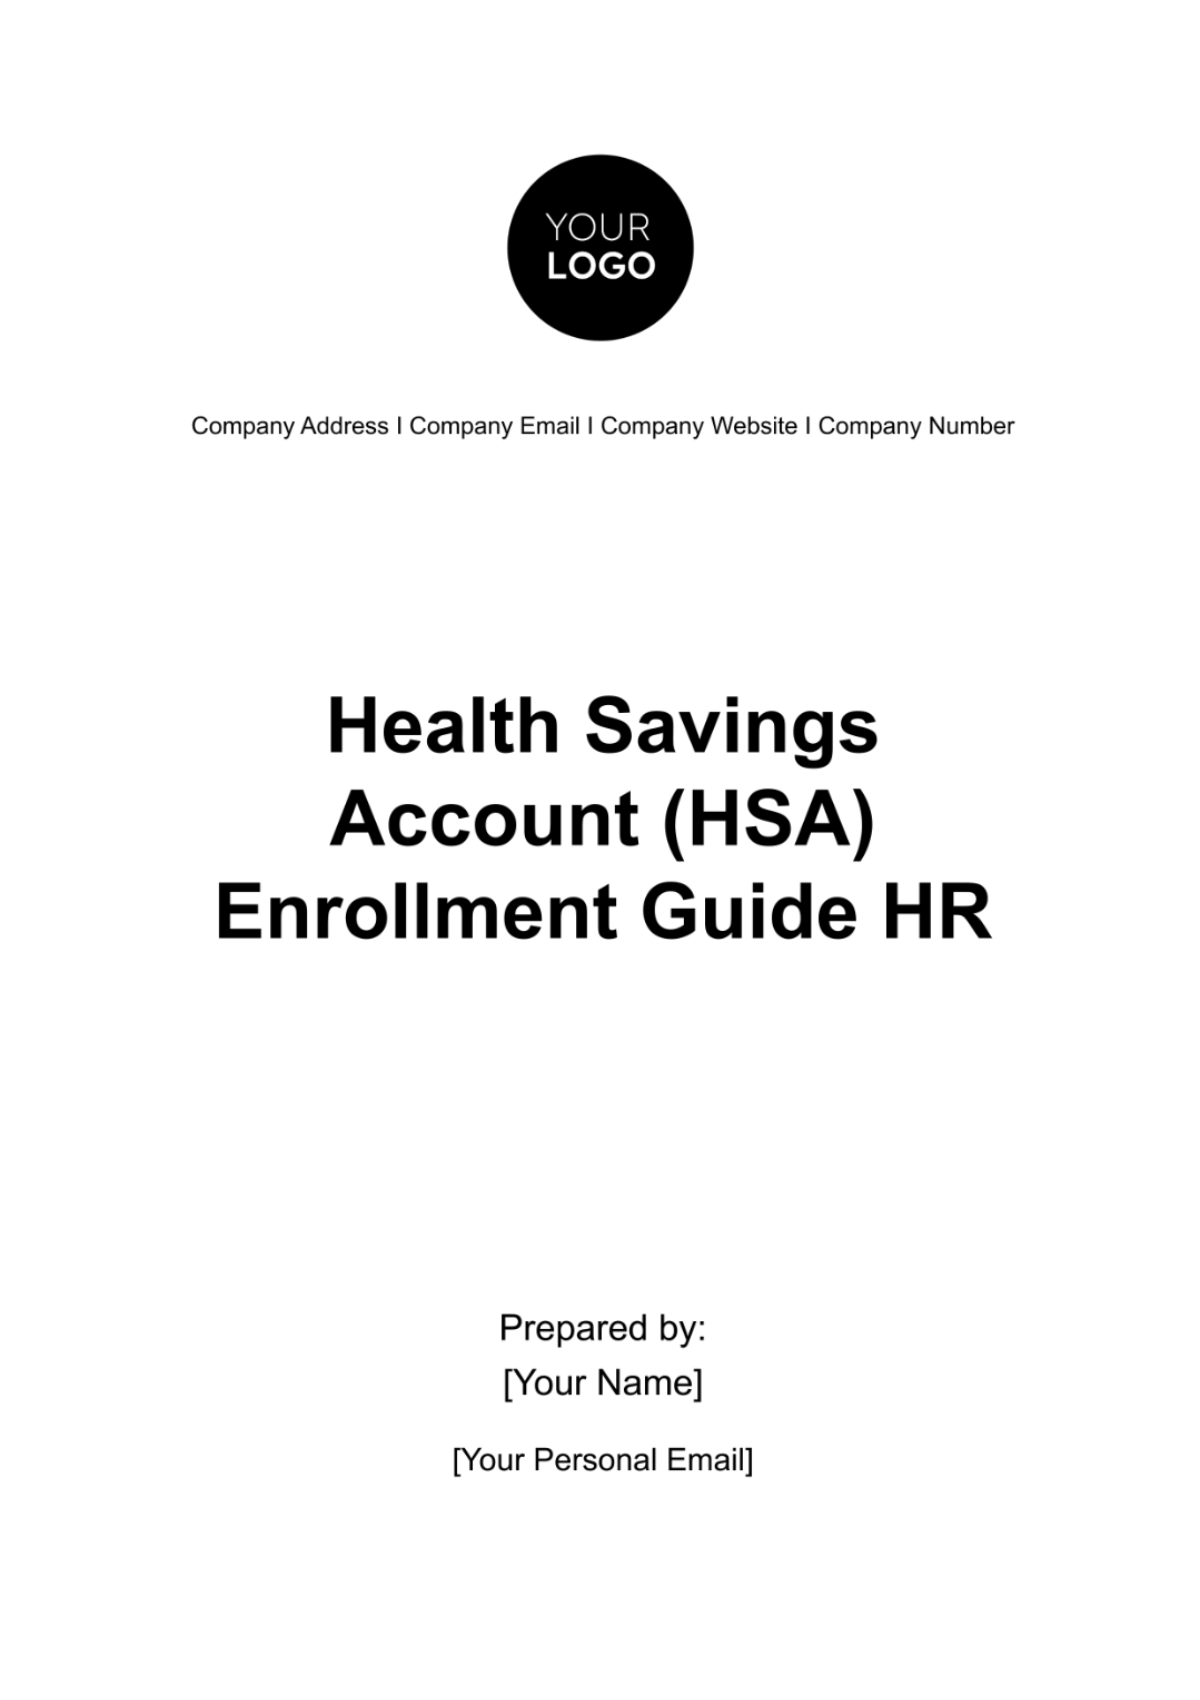 Free Health Savings Account (HSA) Enrollment Guide HR Template